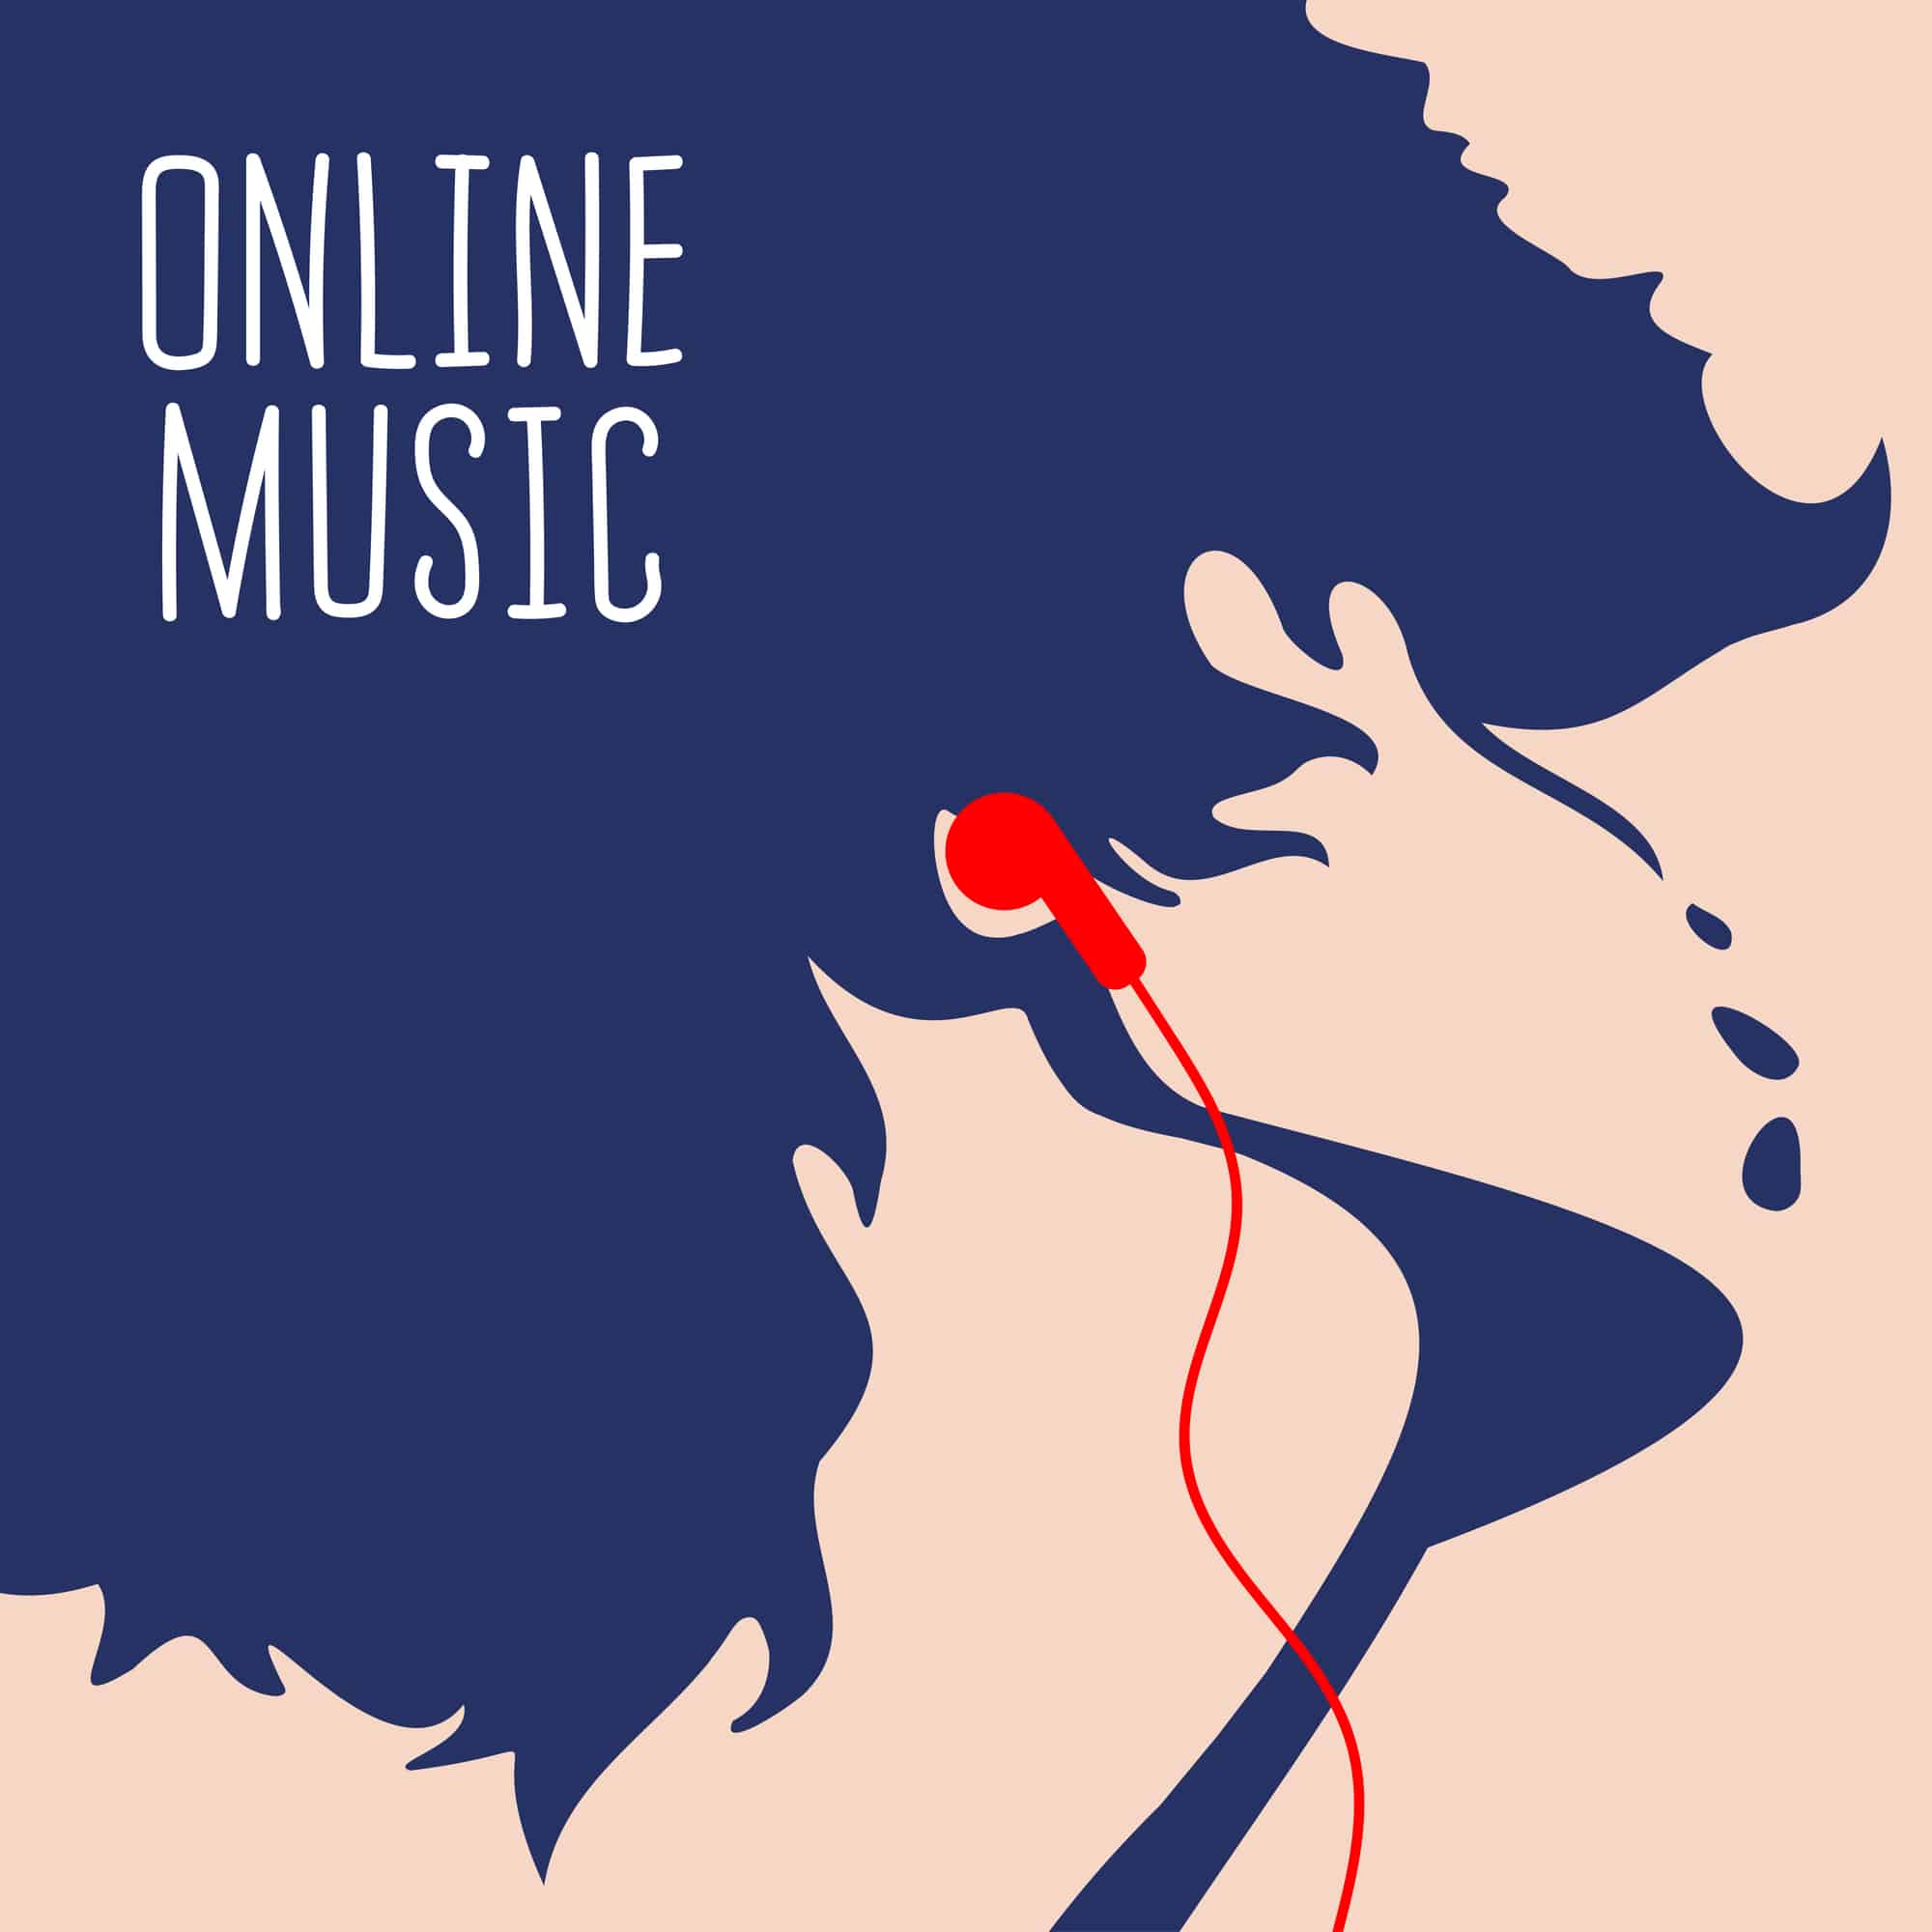 stock-illustration-of-online-music-art